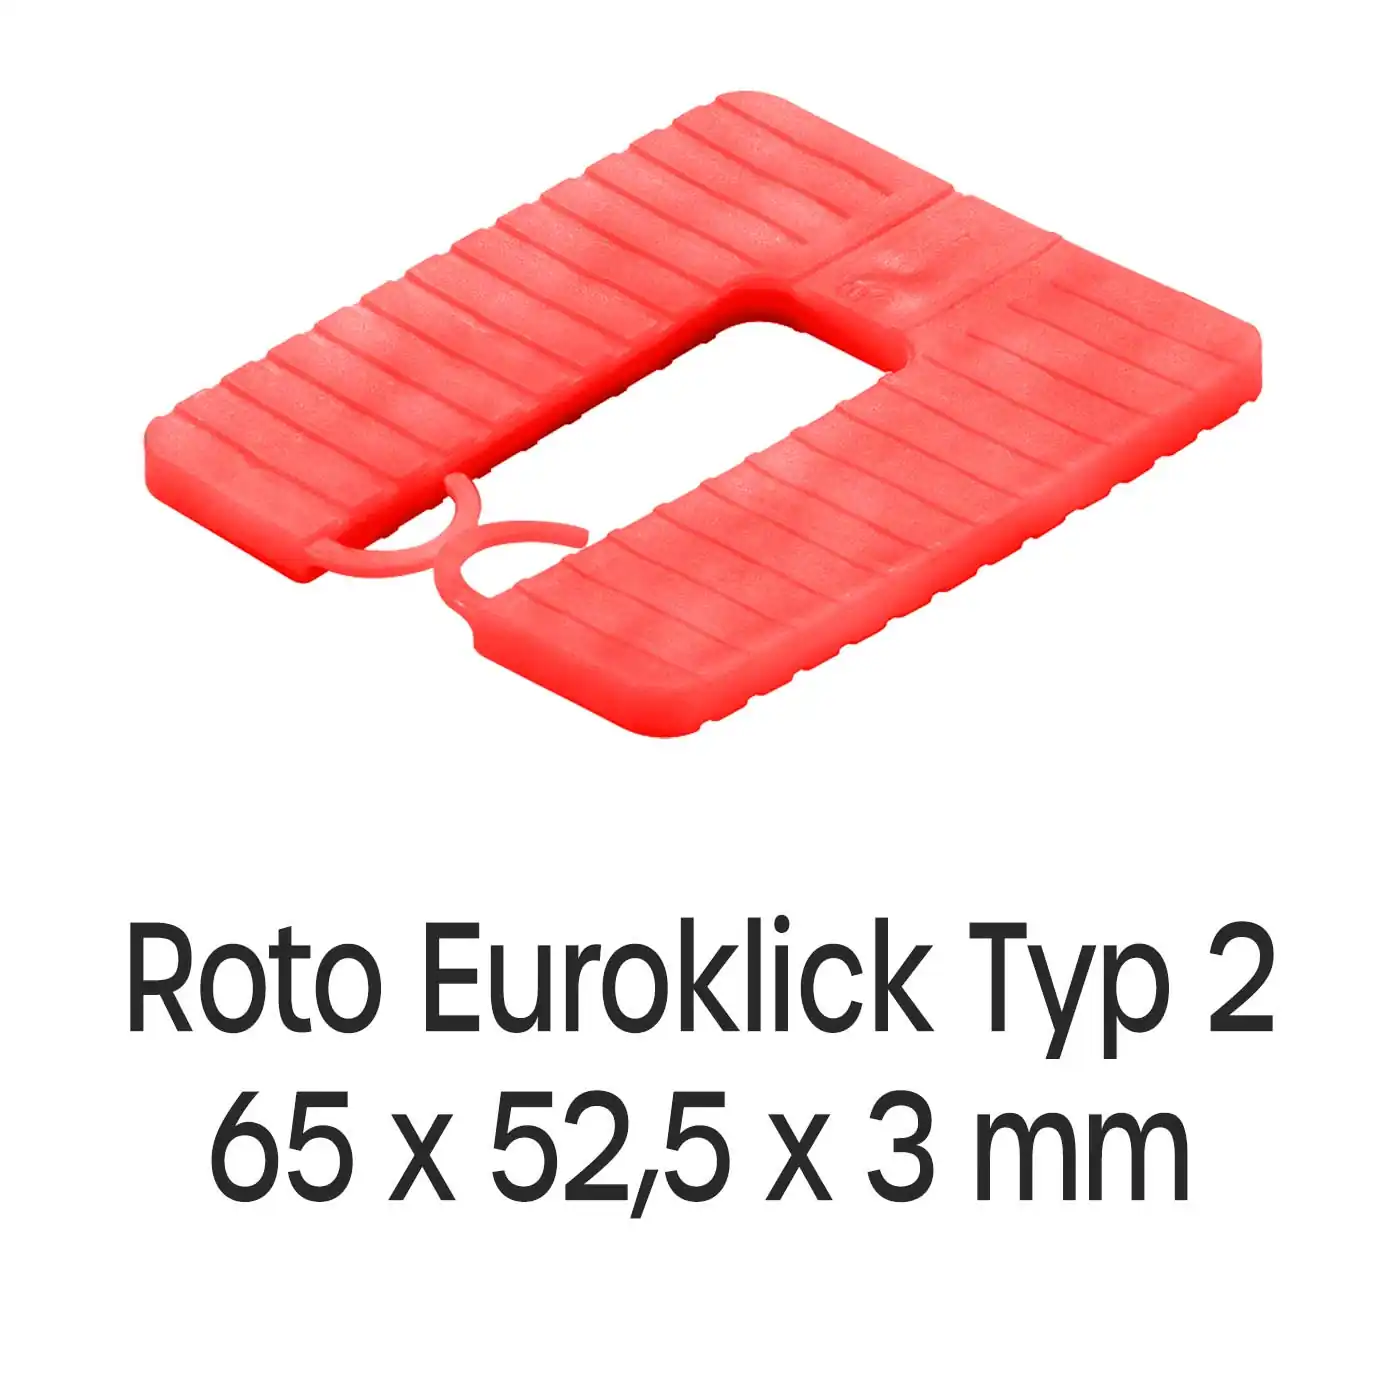 Distanzplatten Roto Euroklick Typ 2 65 x 52,5 x 3 mm 1000 Stück